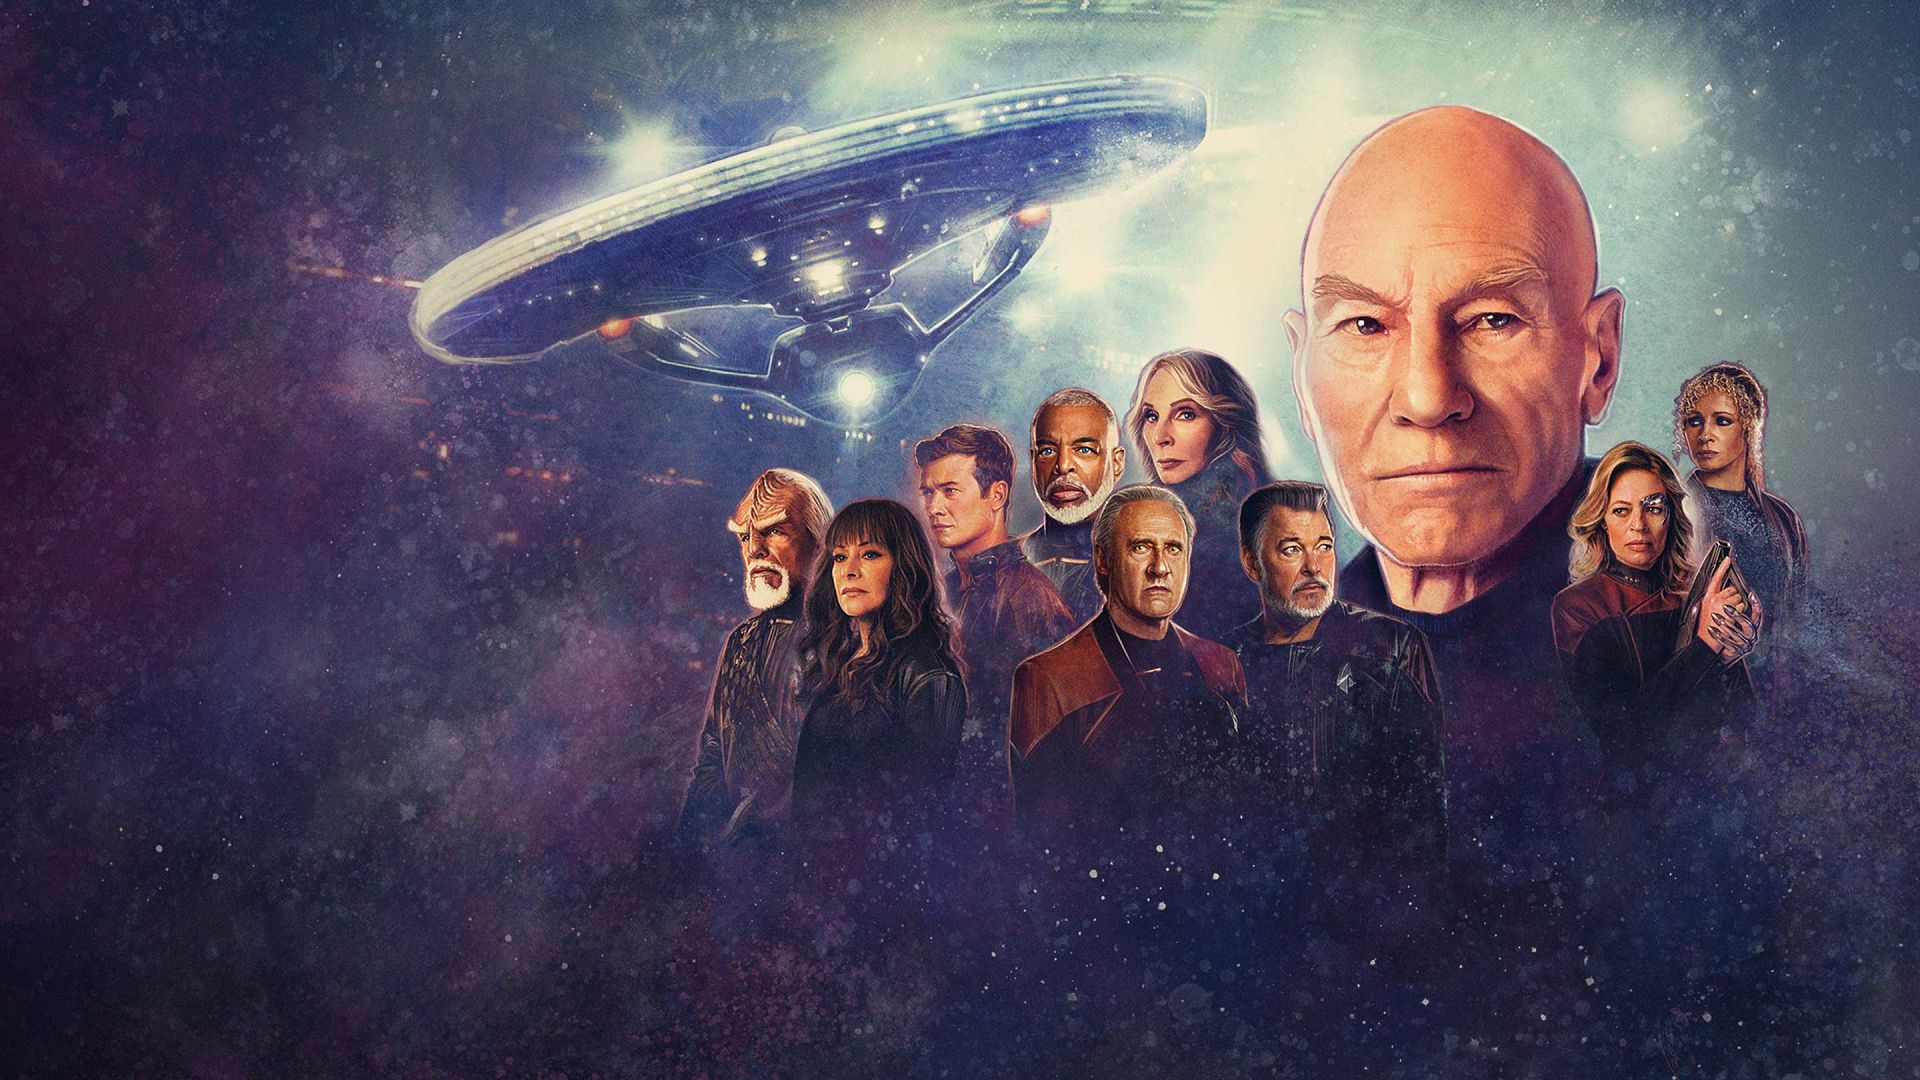  Star-Trek-Picard Star-Trek-Picard est une série télévisée américaine de science-fiction créée par Gene Roddenberry. Elle met en vedette le personnage de Jean-Luc Picard, un capitaine de vaisseau spatial de la Fédération des Planètes Unies. La série suit les aventures de Picard et de son équipage à bord du vaisseau spatial USS Enterprise-D alors qu'ils explorent l'espace et font 